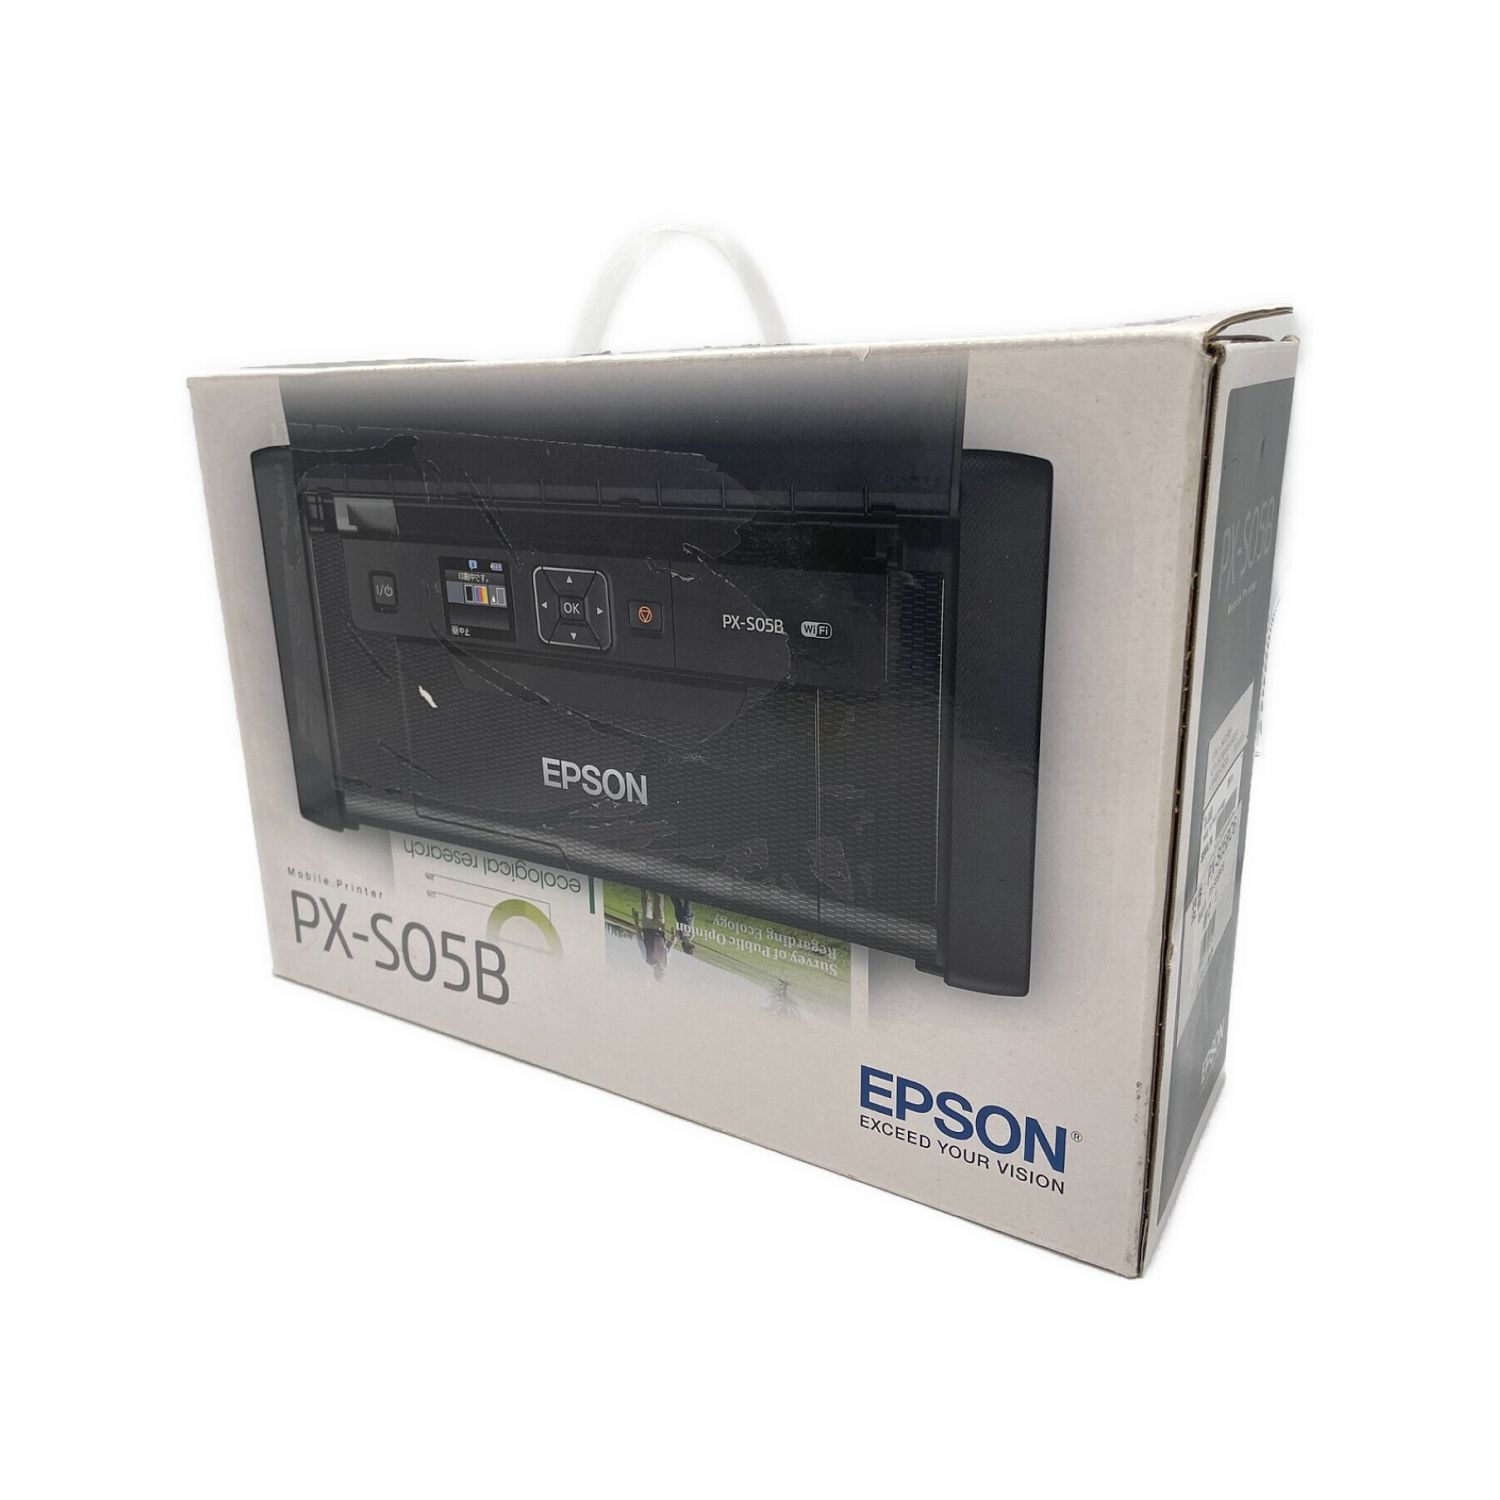 EPSON エプソン　モバイルプリンター　PX-S05BPC/タブレット